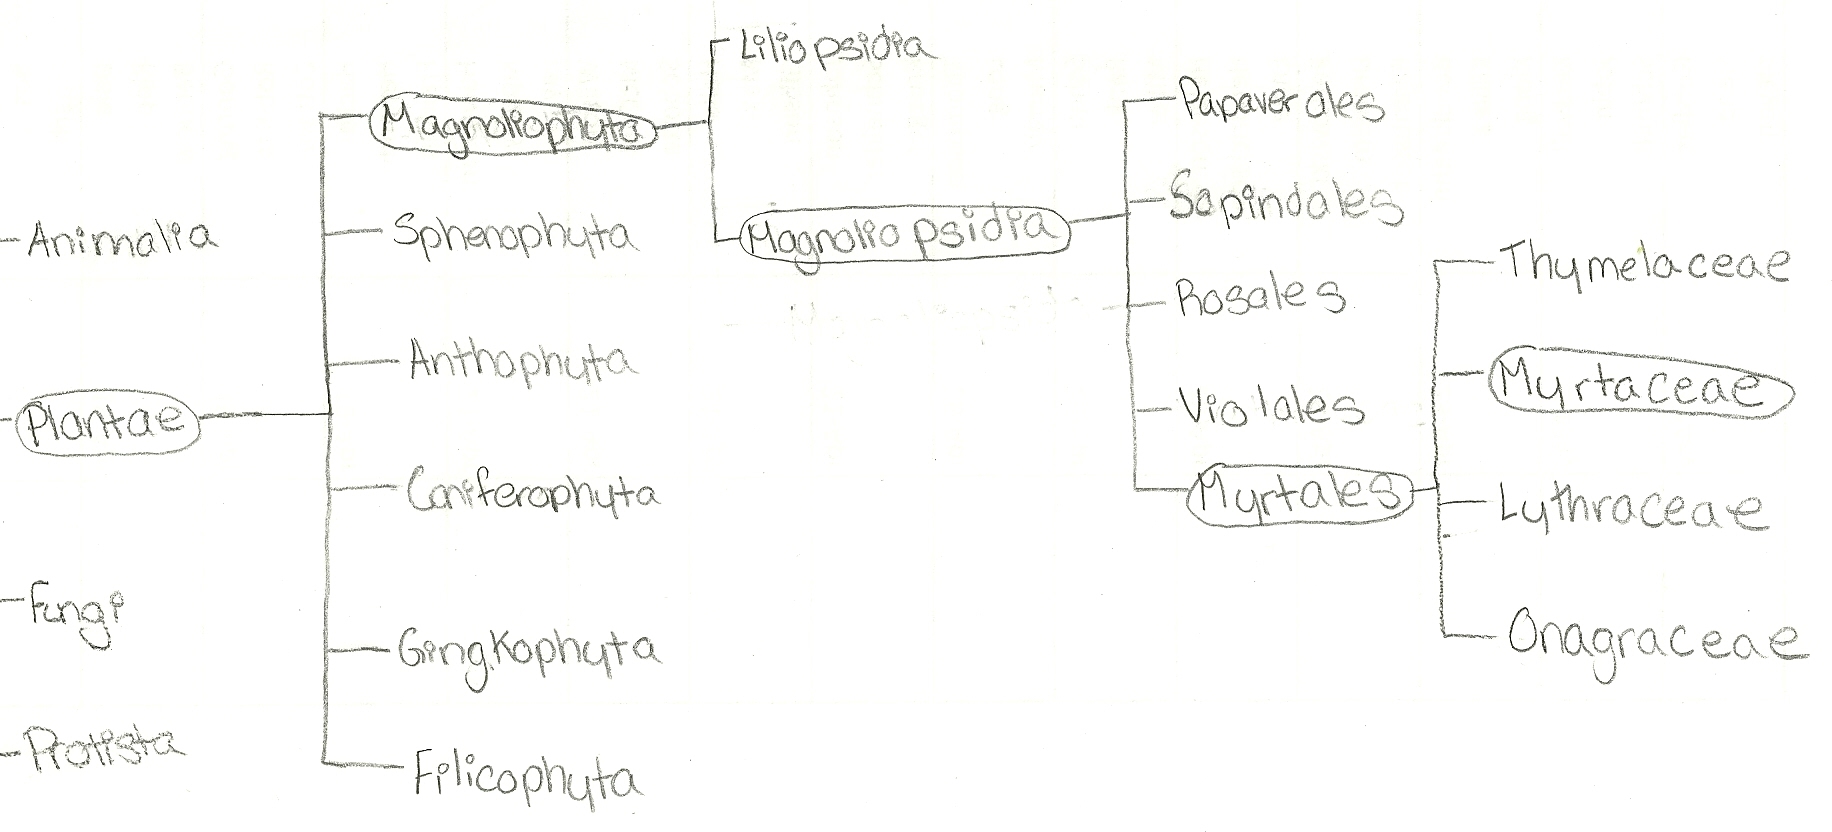 Phylogeny of P. guajava